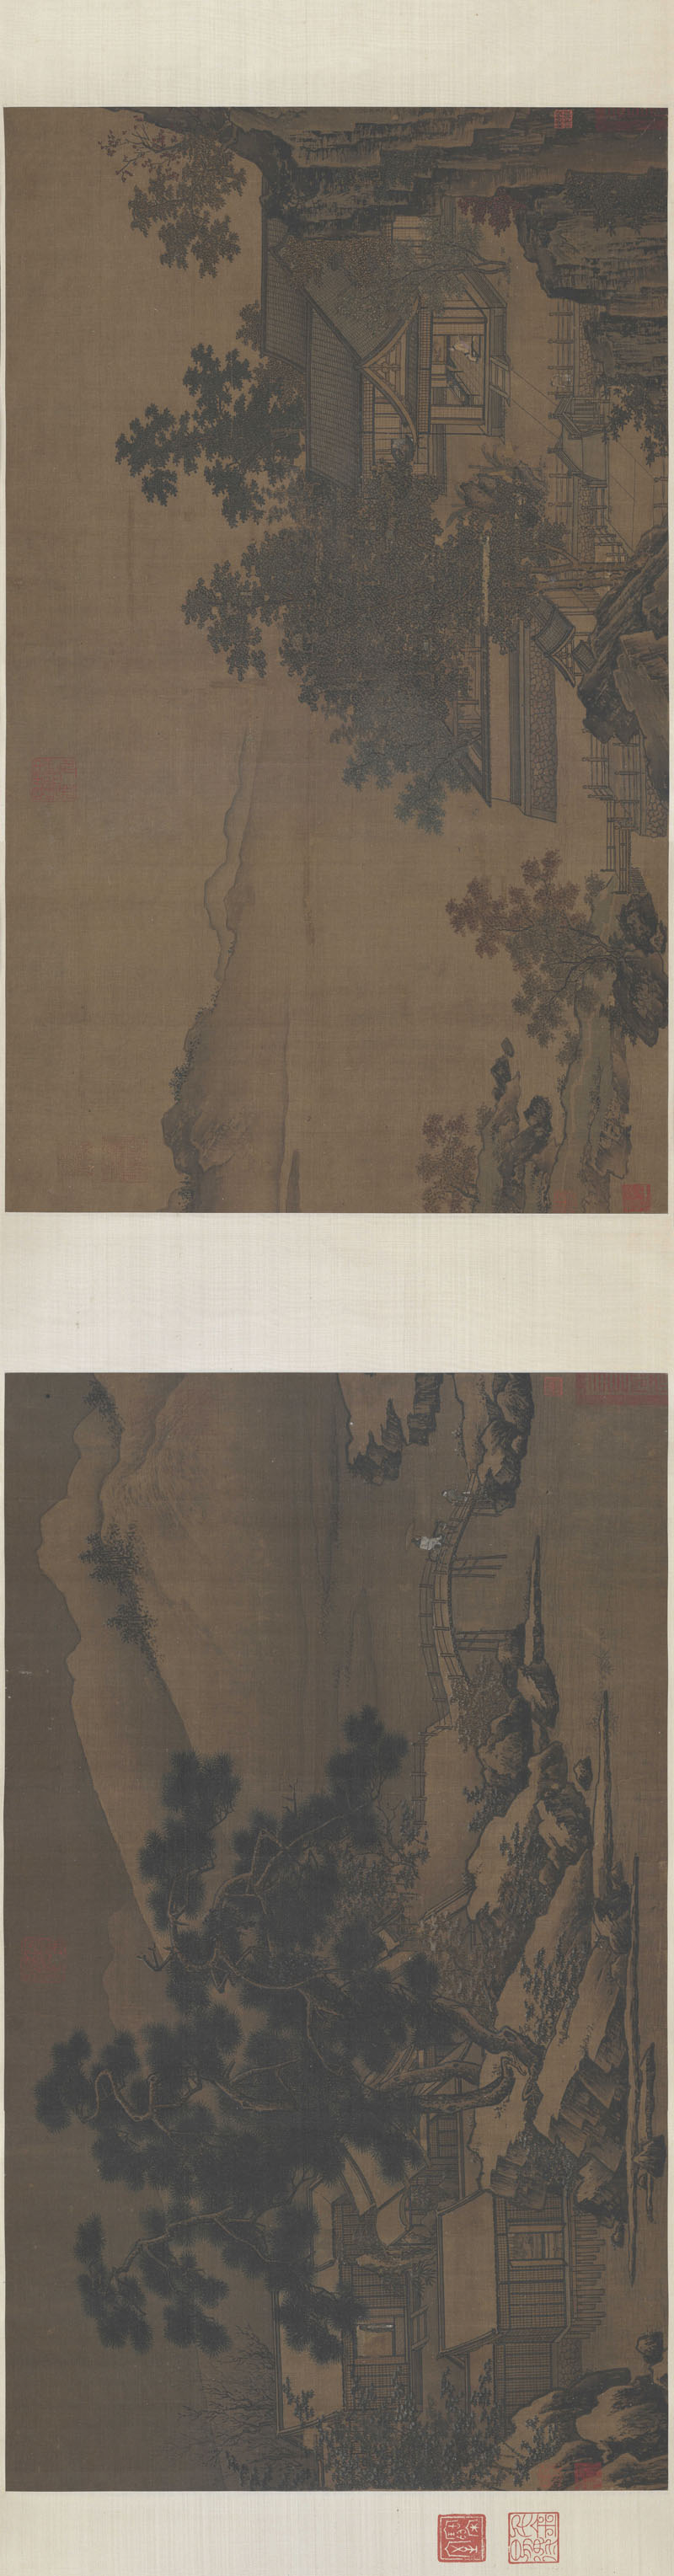 B5039007《四景山水图之二》宋代画家刘松年高清作品 宋代-第1张